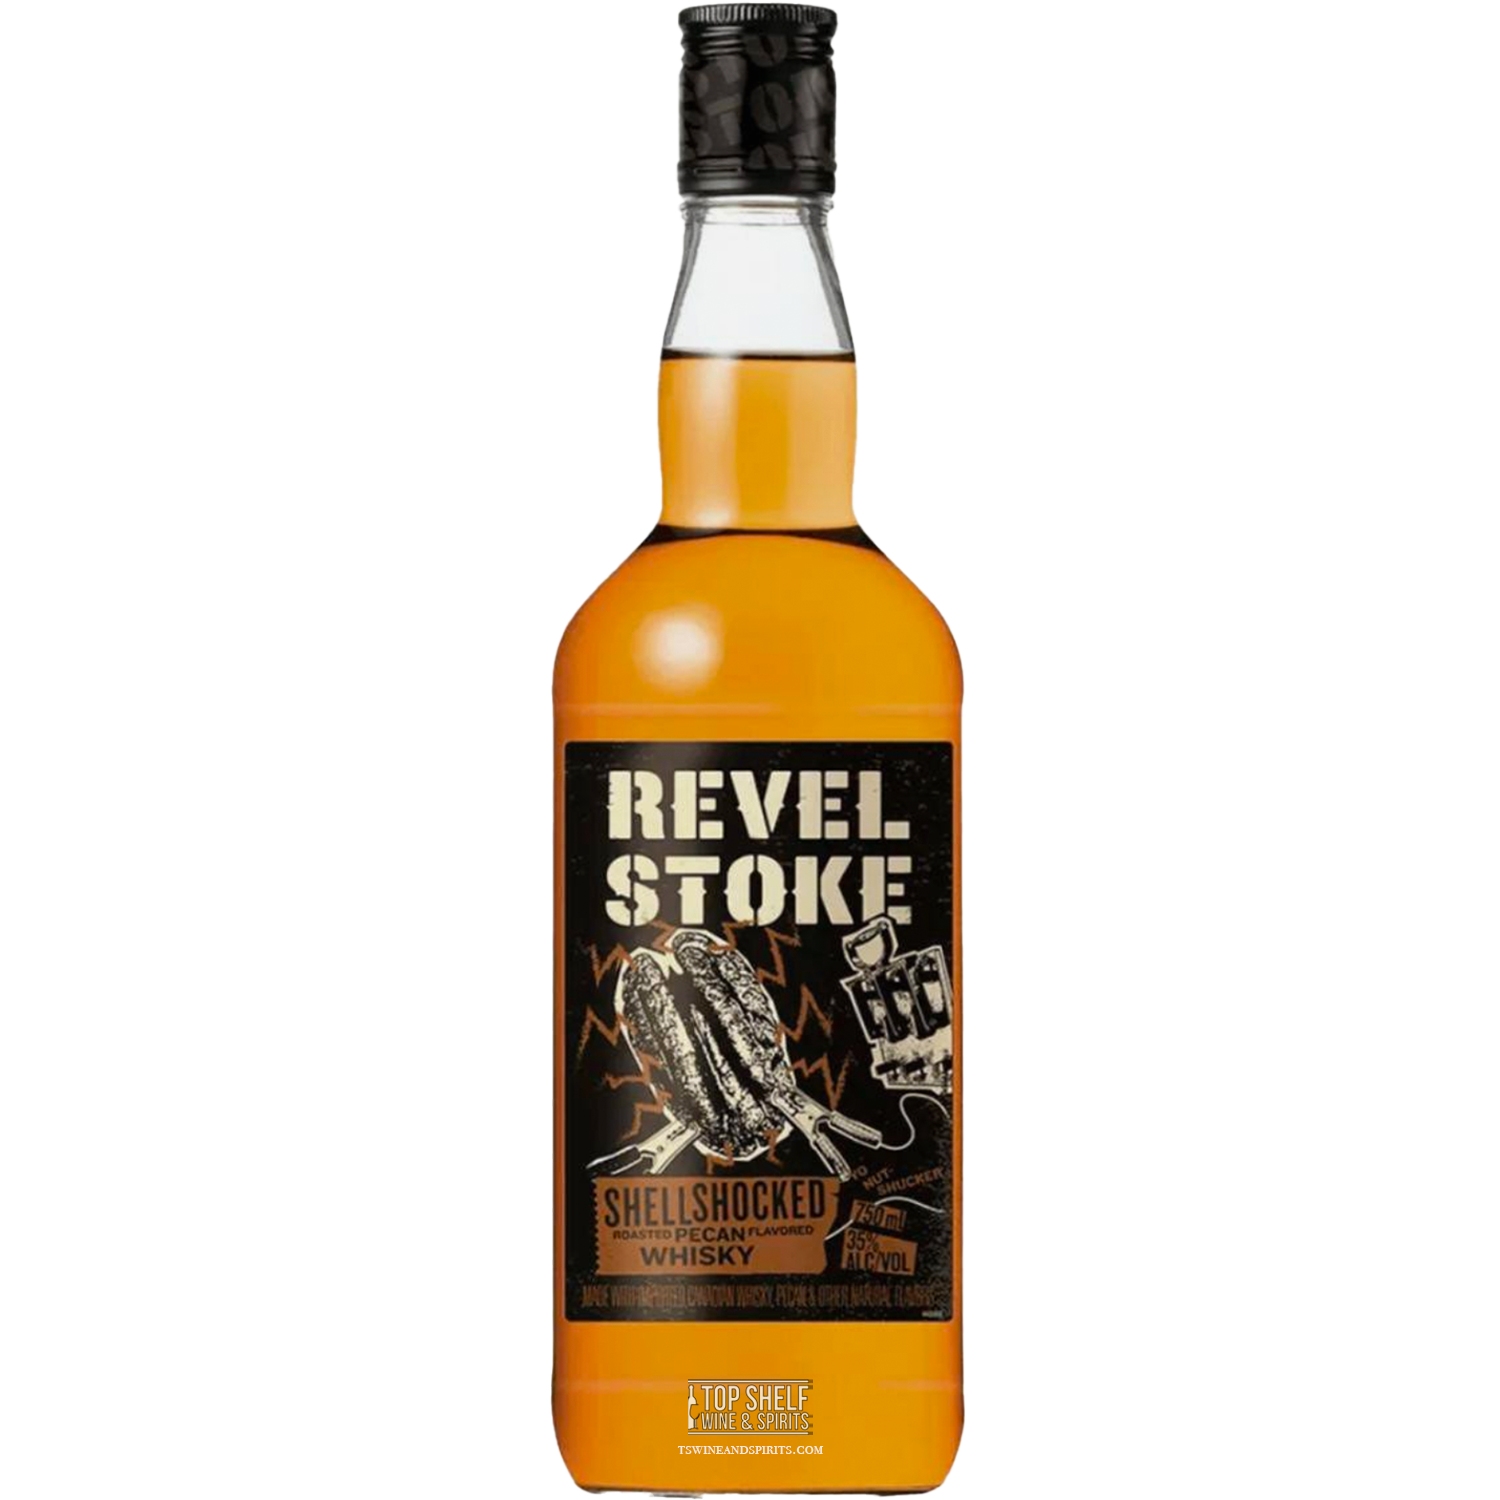 Revel Stoke Shell Shocked Pecan Whiskey